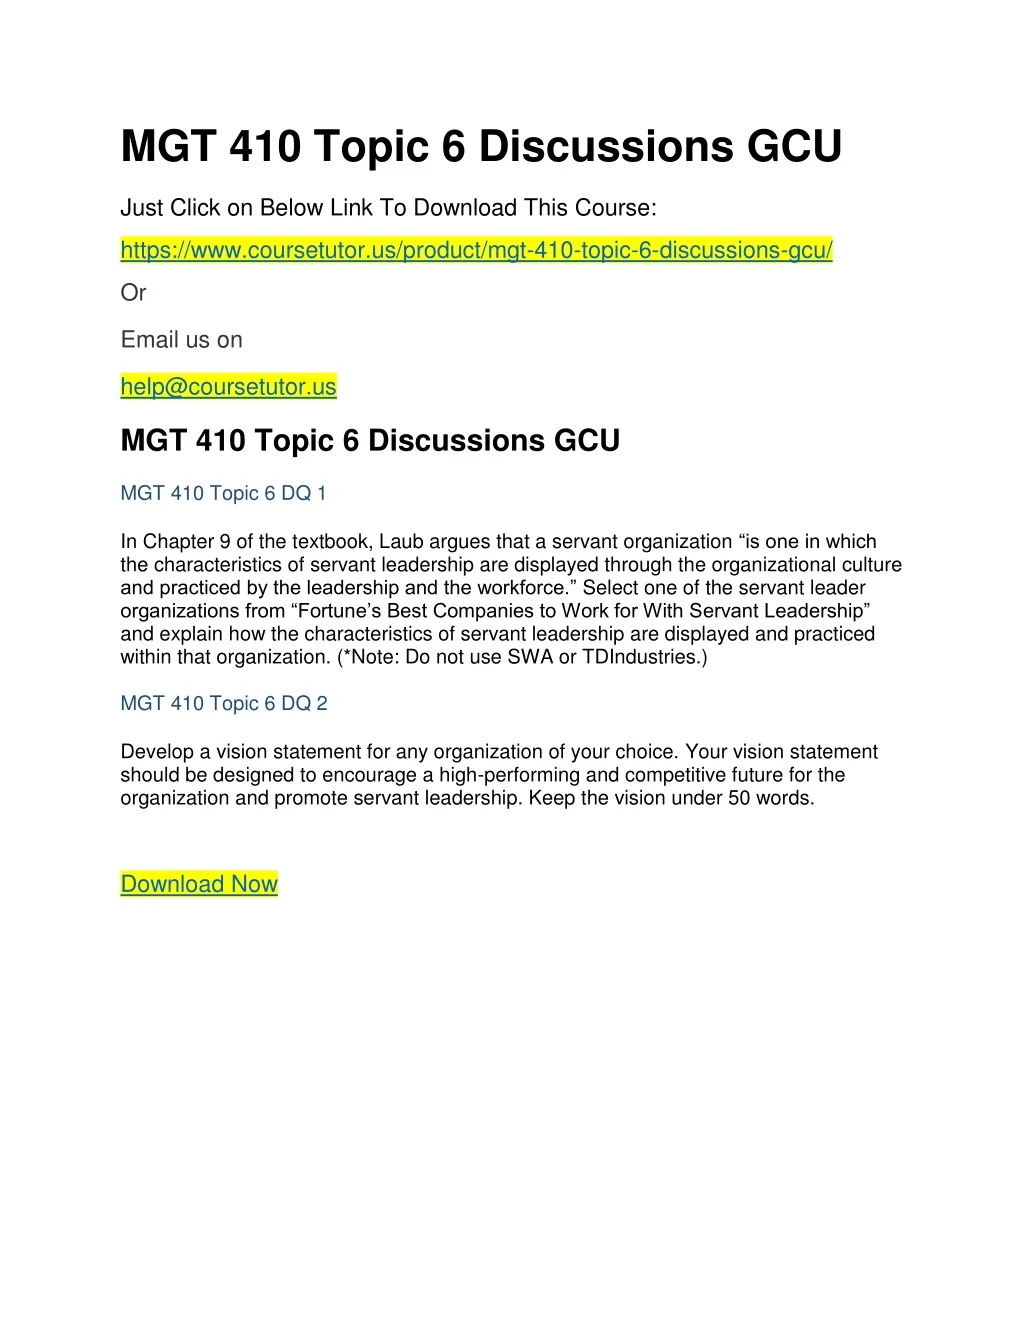 mgt 410 topic 6 discussions gcu